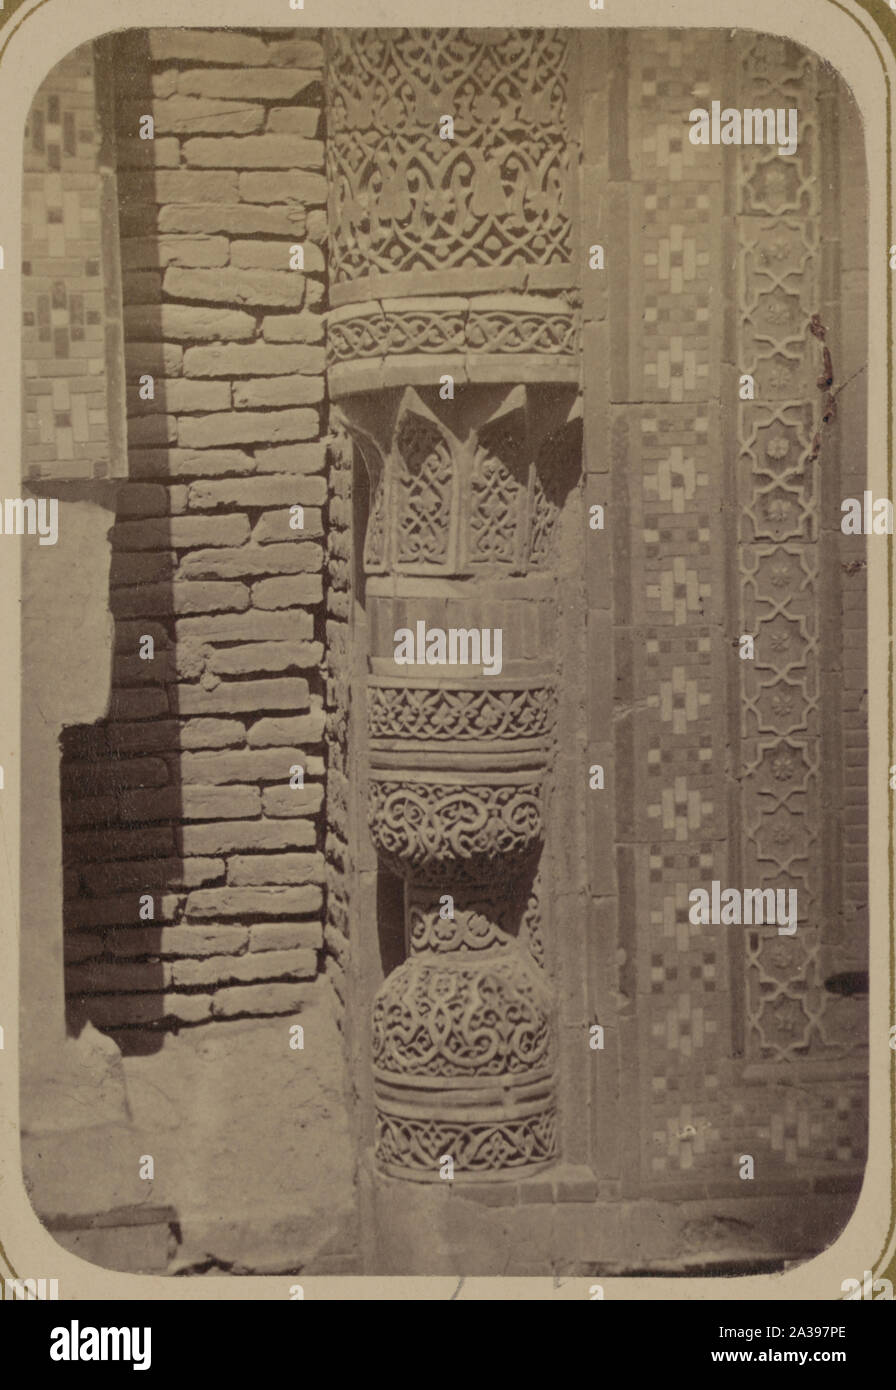 Samarkandskiia drevnosti. Grobnitsa sviatago Kussama ibni Abassa (Shakh-Zinde) i mavzolei pri nei. Mavzolei Emira Kutuluka Turdi-Bek-Aka. Baza kolony [sic] Stock Photo